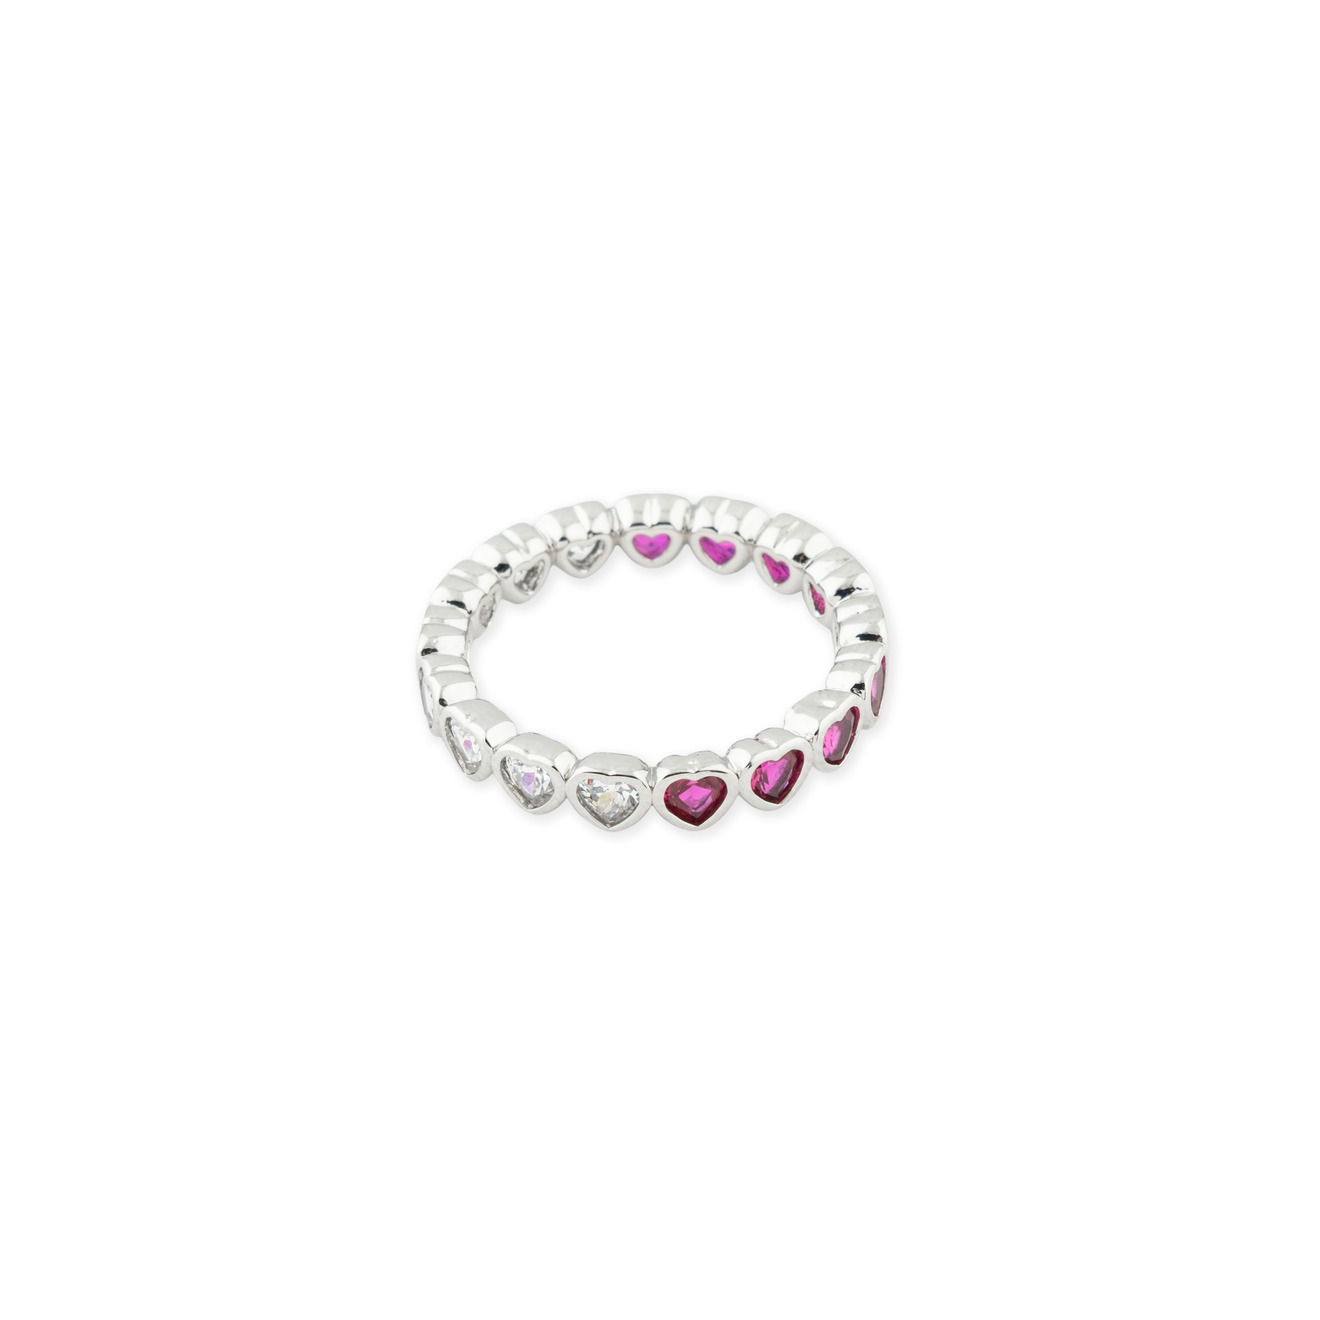 Herald Percy Серебристое кольцо из сердец с белыми и розовыми кристаллами